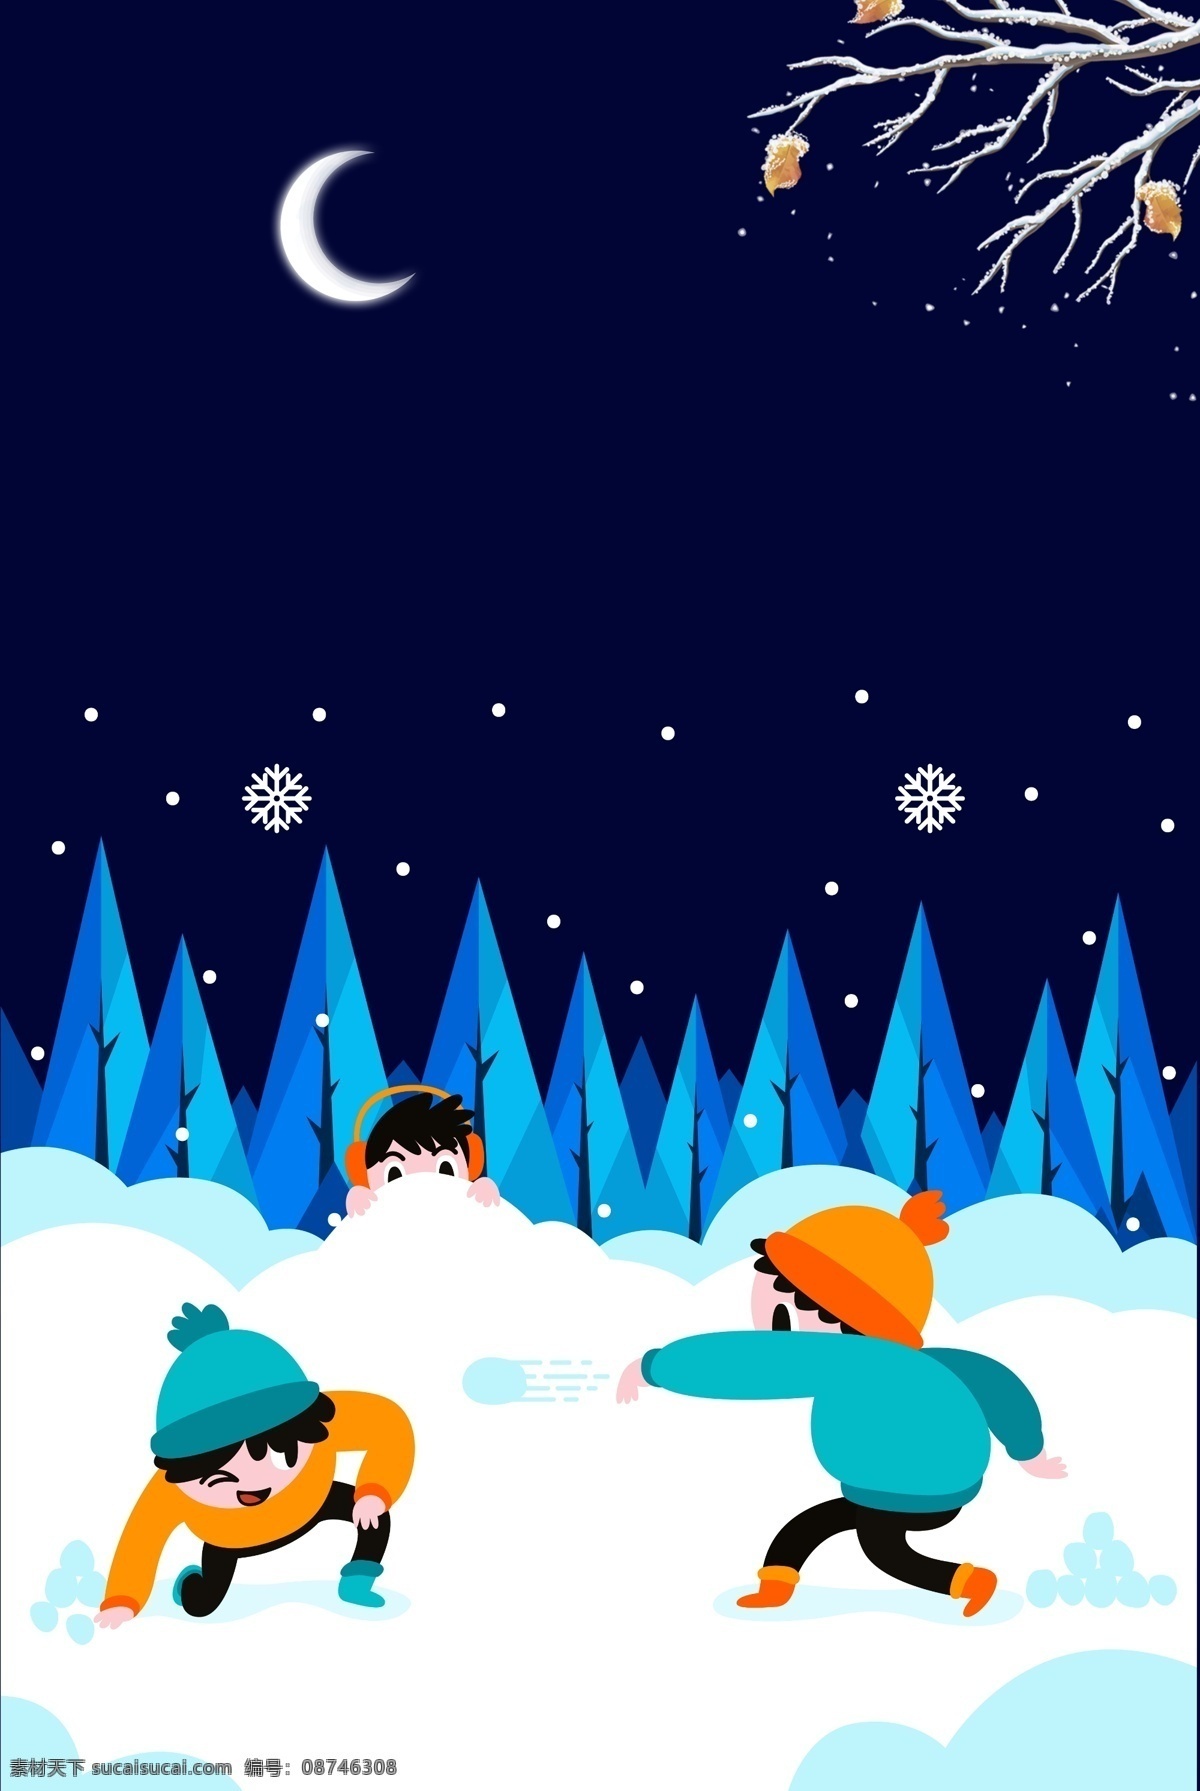 卡通 蓝色 冬季 背景 月亮 树枝 雪花 冬天 堆雪人 打雪杖 冬季背景 大雪 大寒 冬至背景